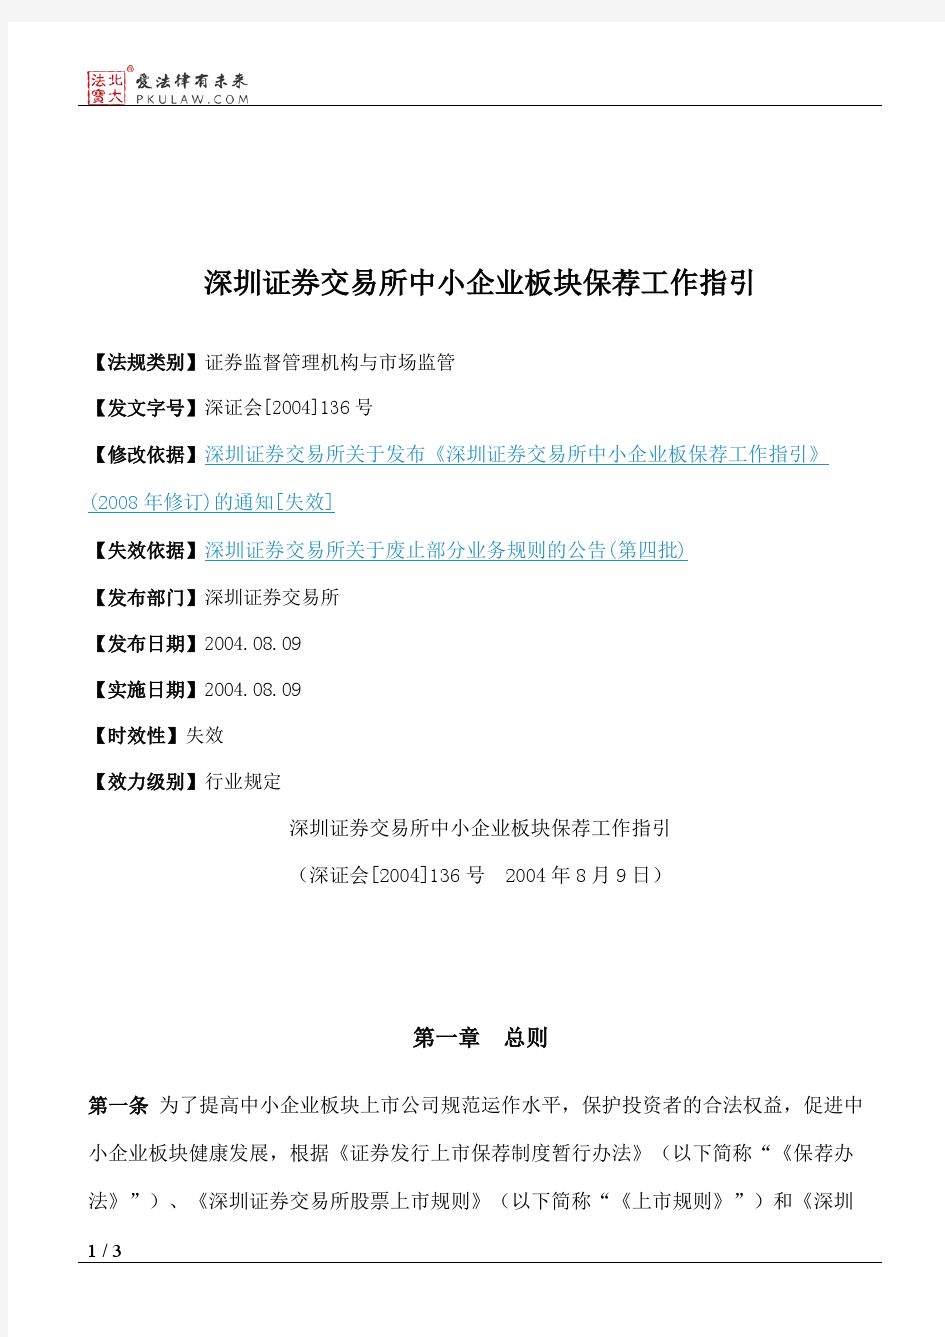 深圳证券交易所中小企业板块保荐工作指引